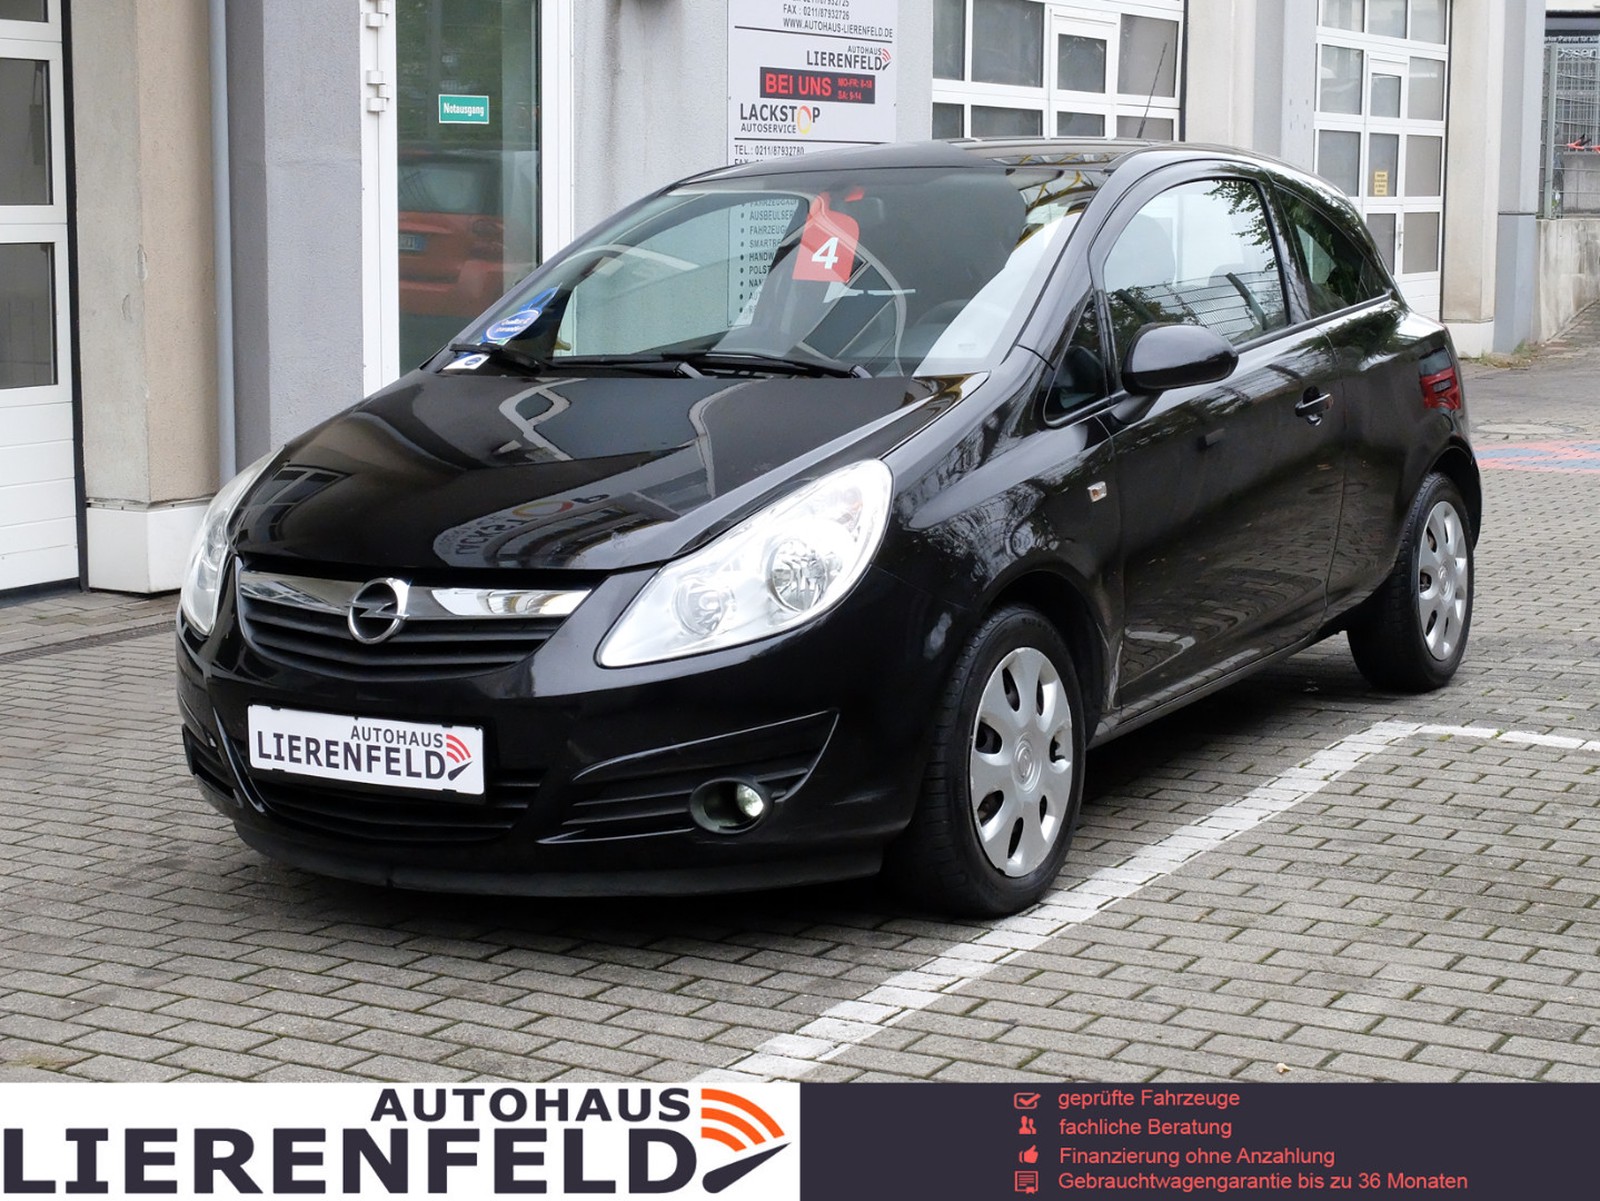 Opel Corsa D Schwarz gebraucht, Benzin und Automatik, 122.000 Km - 7.950 €